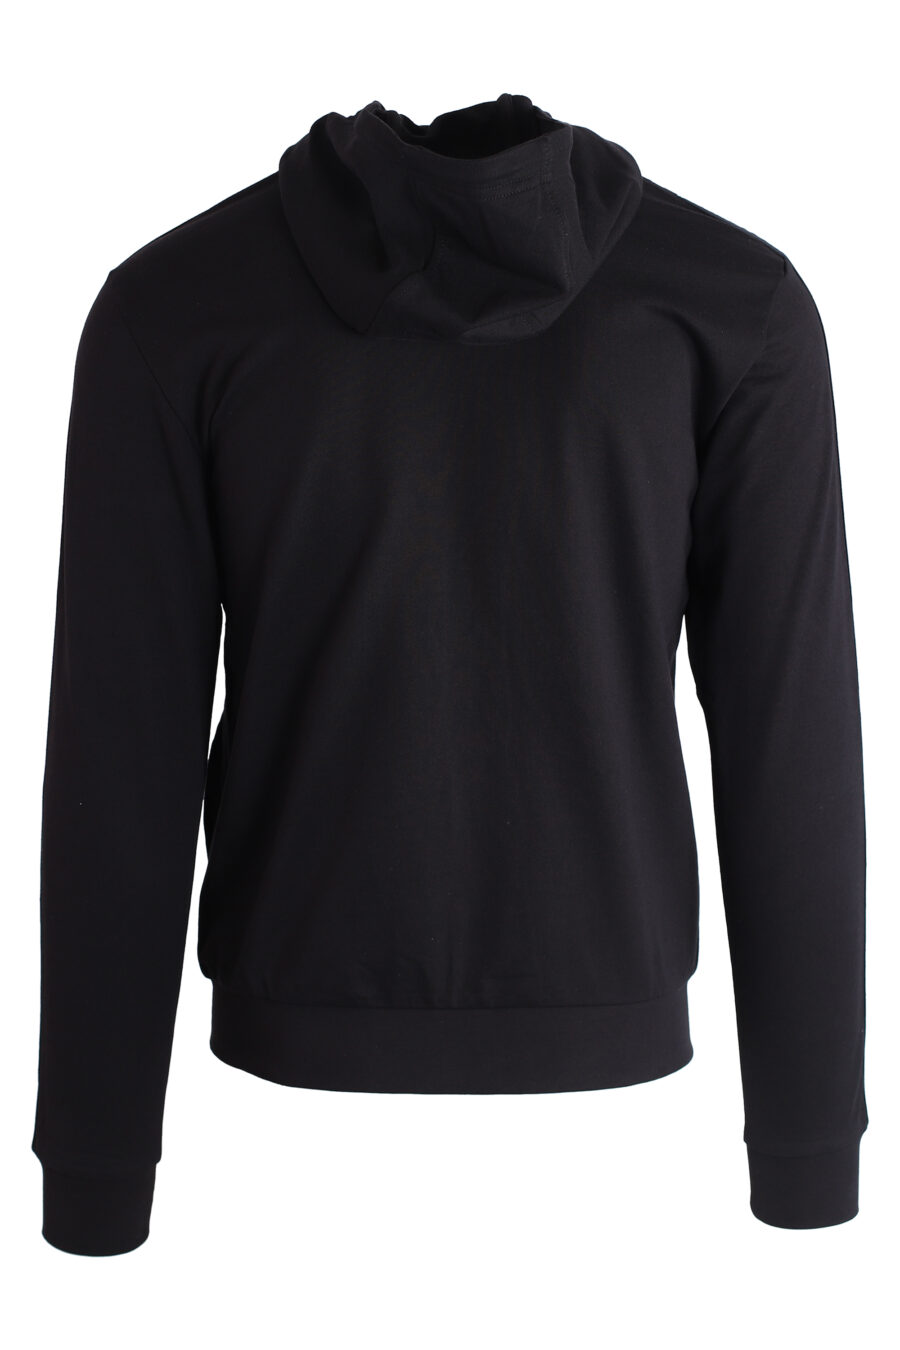 Schwarzes Kapuzensweatshirt mit Reißverschluss und Logo an den Seiten - IMG 3191